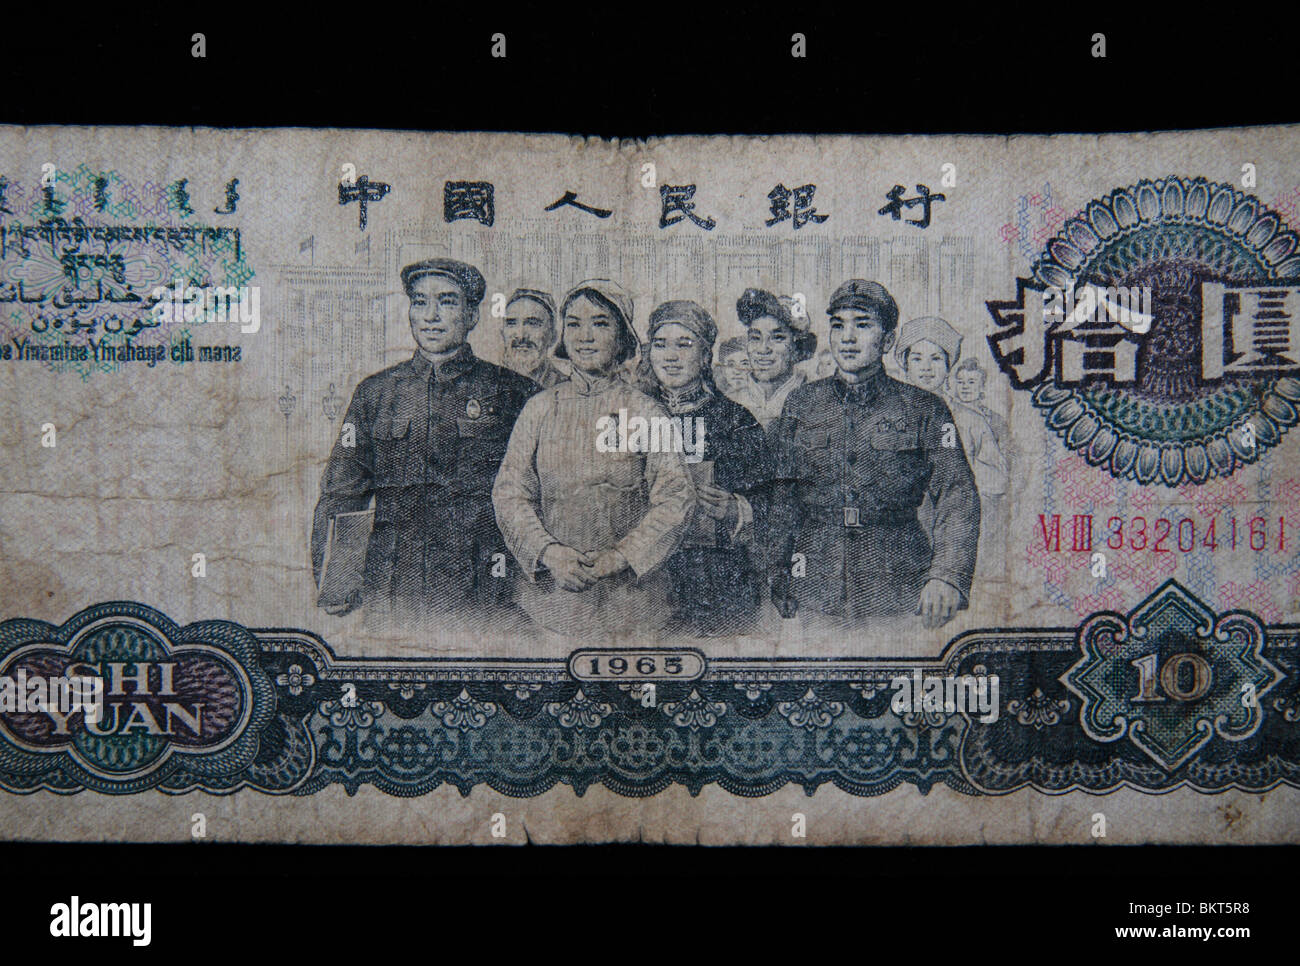 De près de l'autre côté d'un billet de 10 yuans chinois faite en 1965 sur un fond noir. Banque D'Images